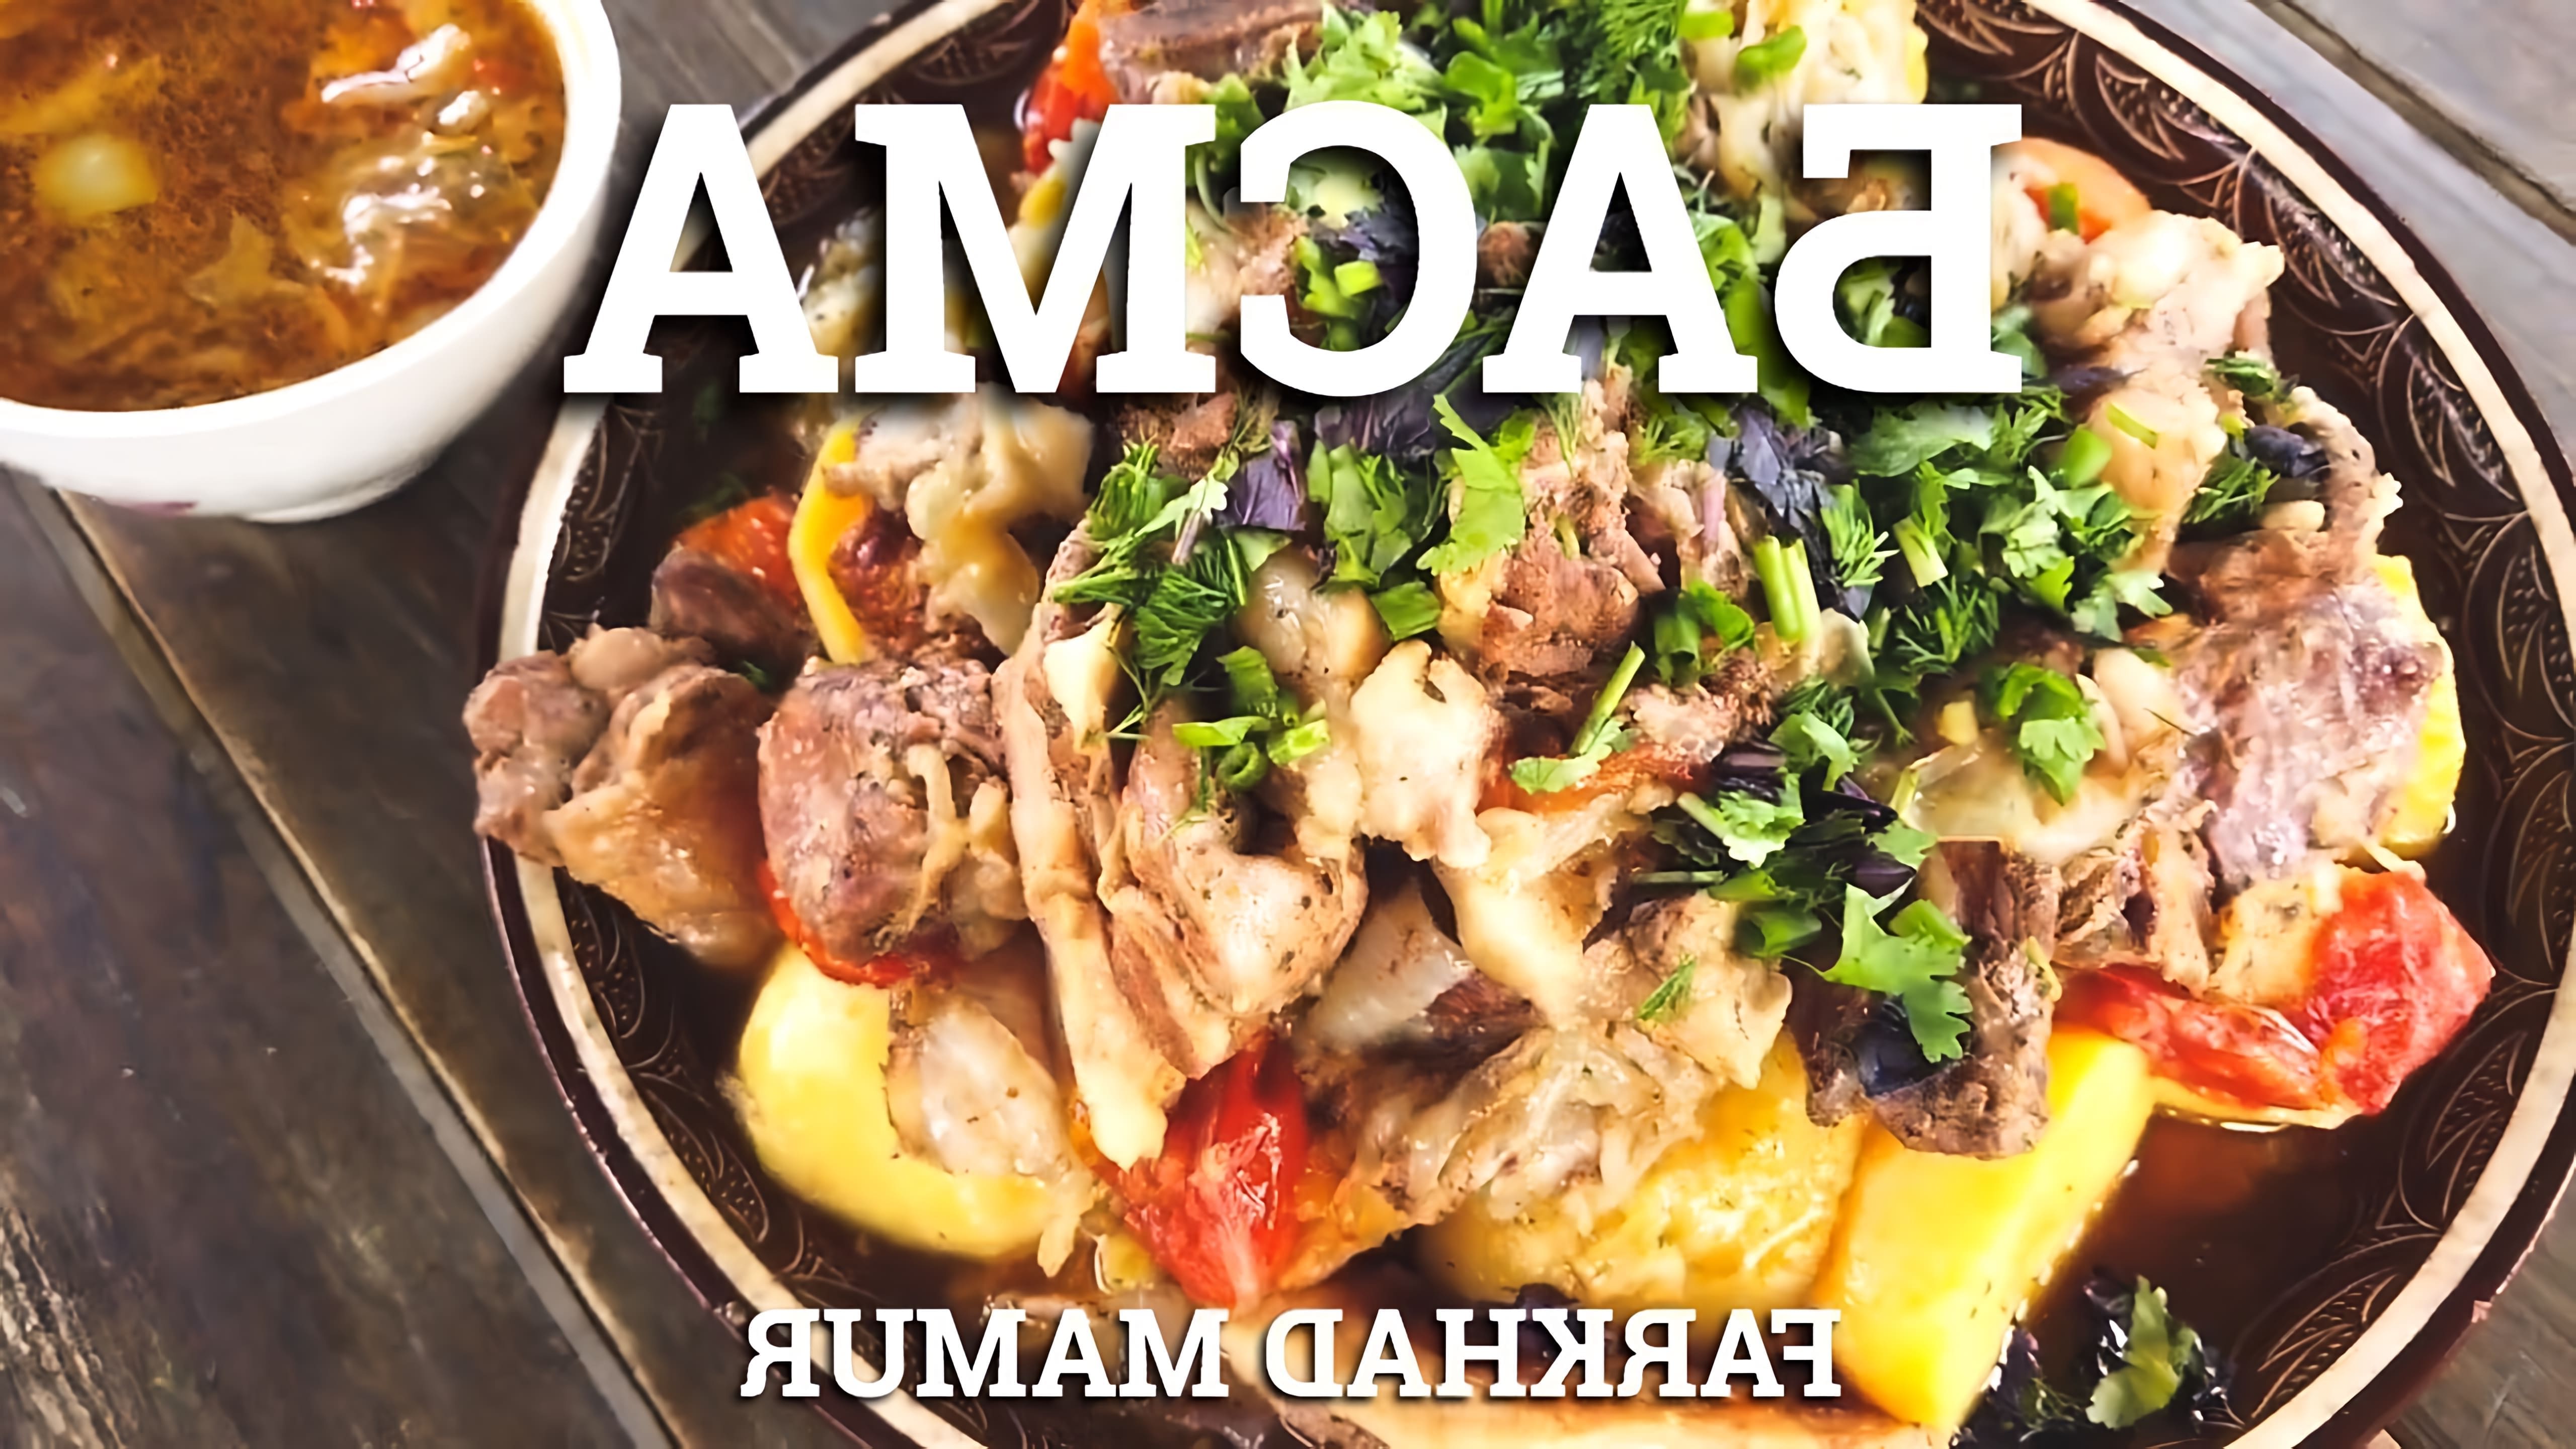 В этом видео демонстрируется процесс приготовления басмы - традиционного блюда узбекской кухни